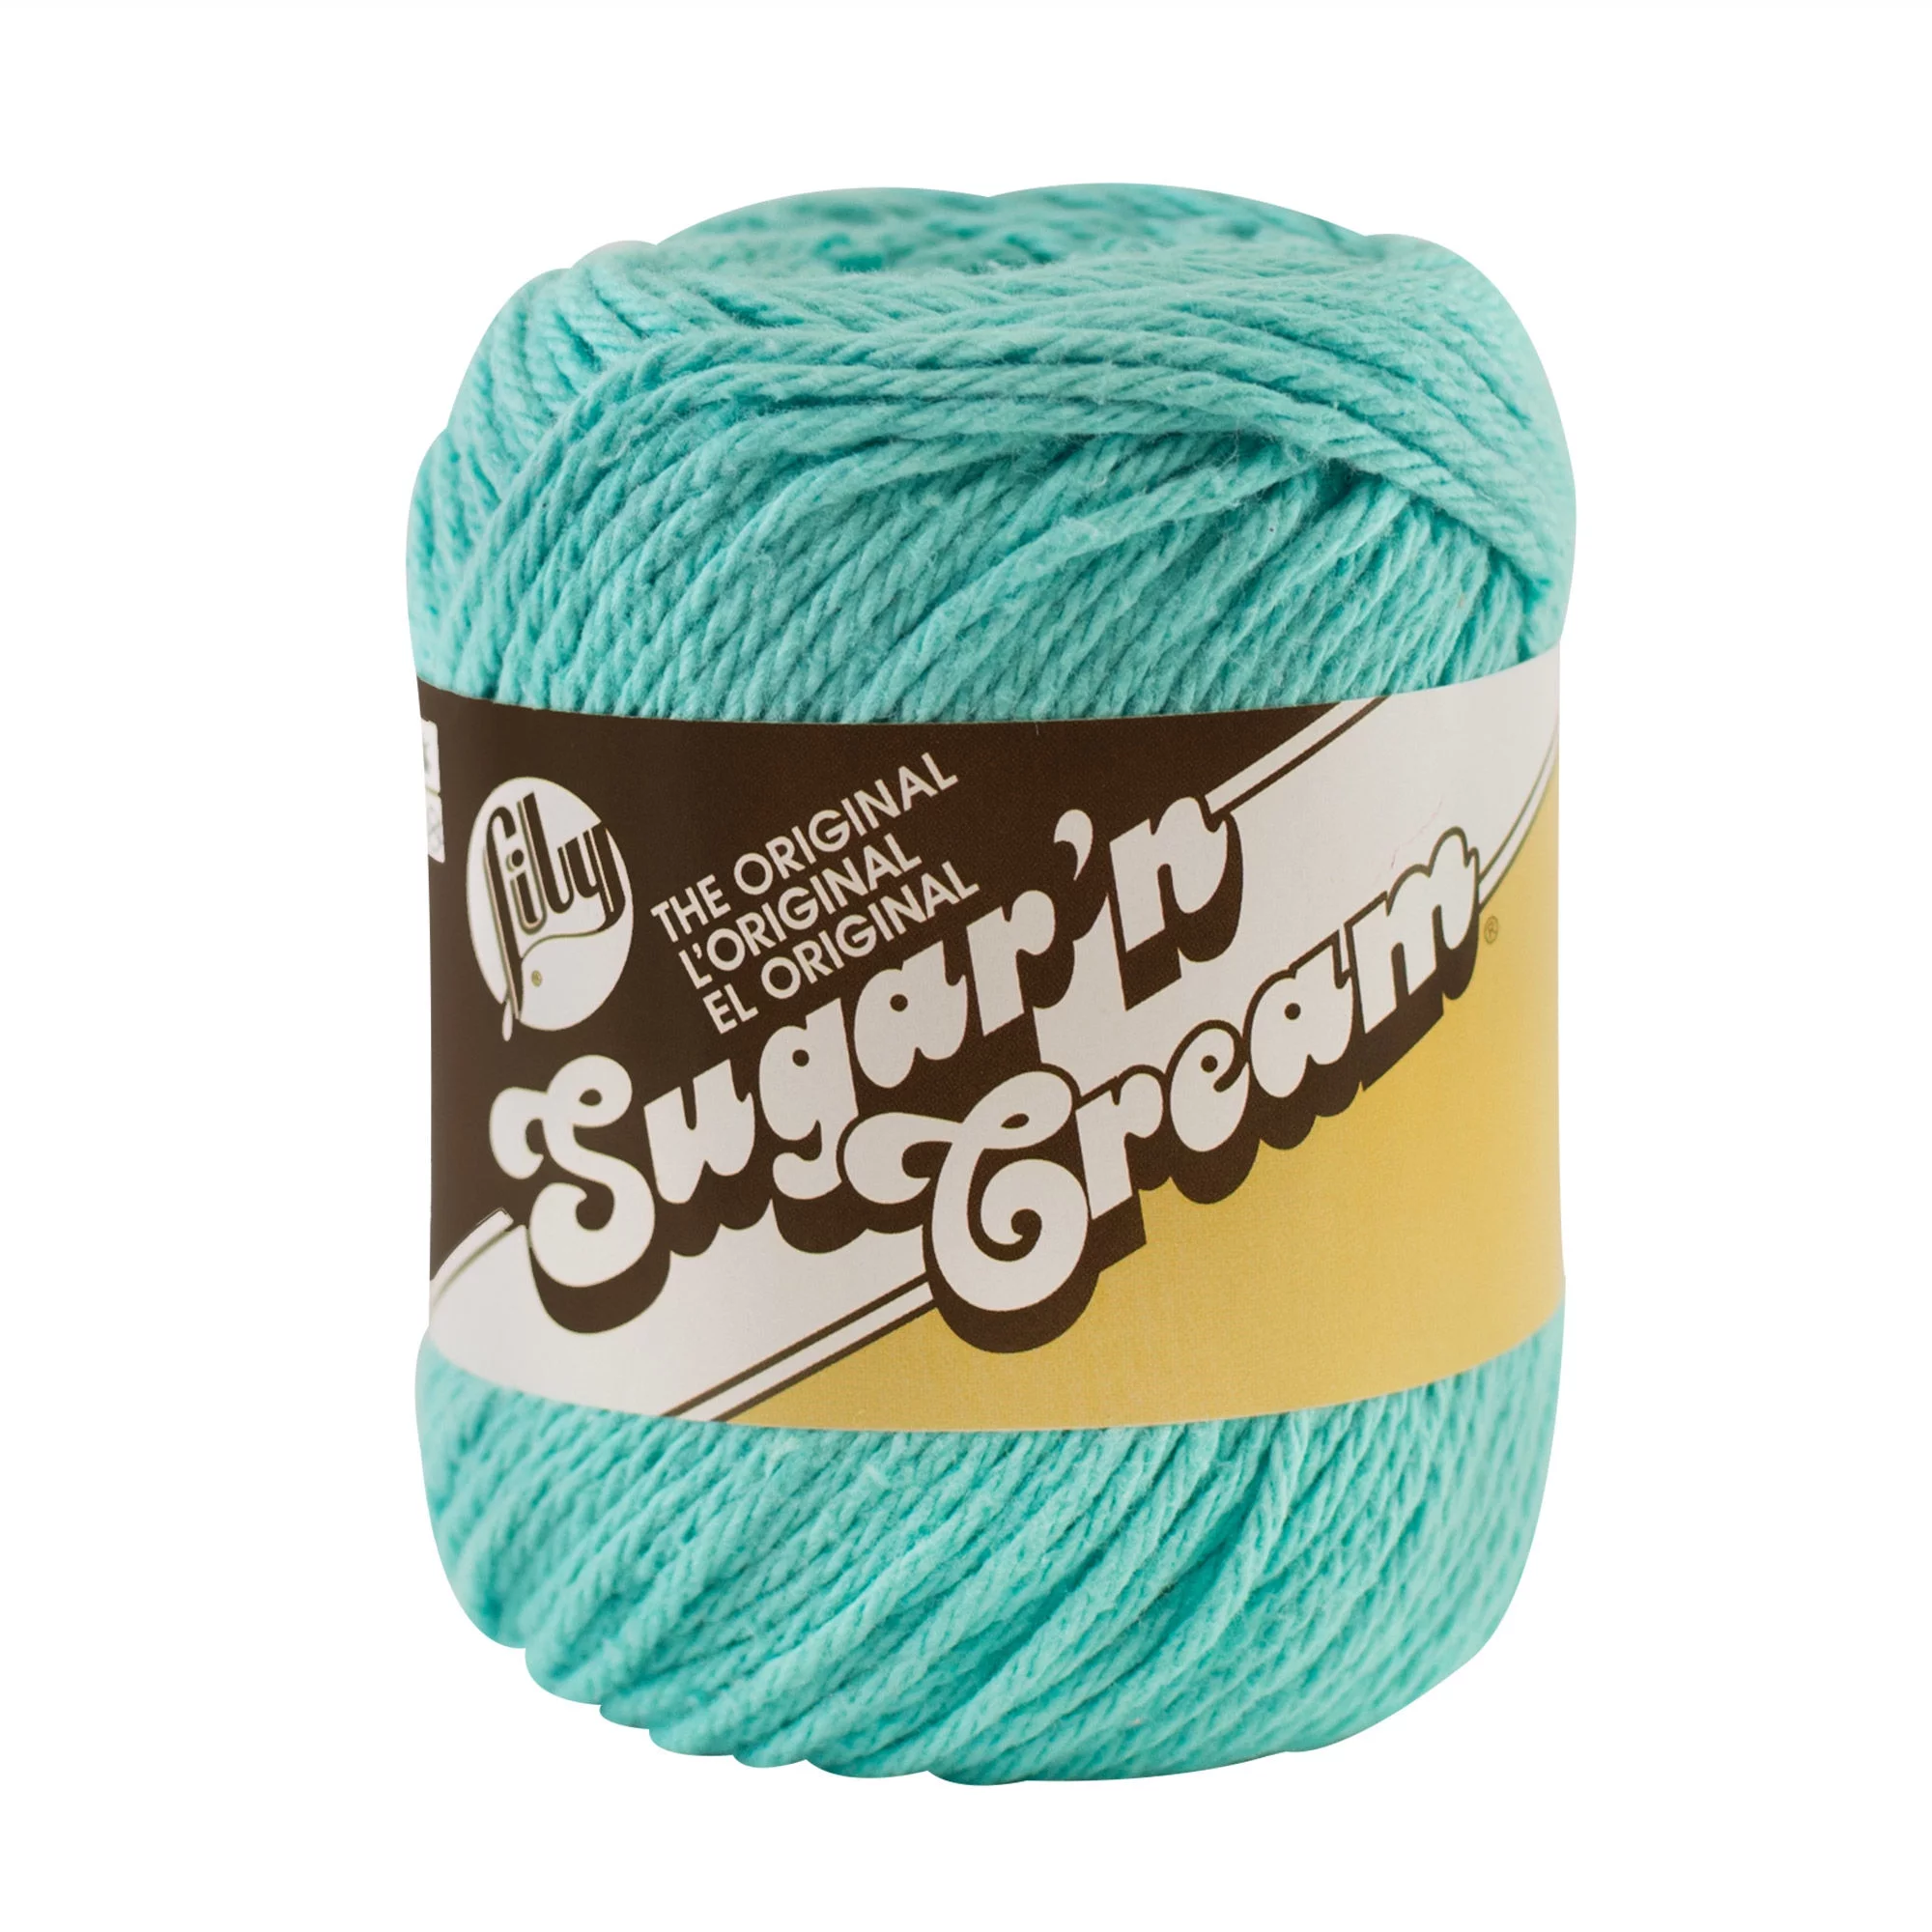 Lily Sugar'n Cream The Original 4 Medium Cotton Yarn, Seabreeze 2.5oz/71g, 120 Yards